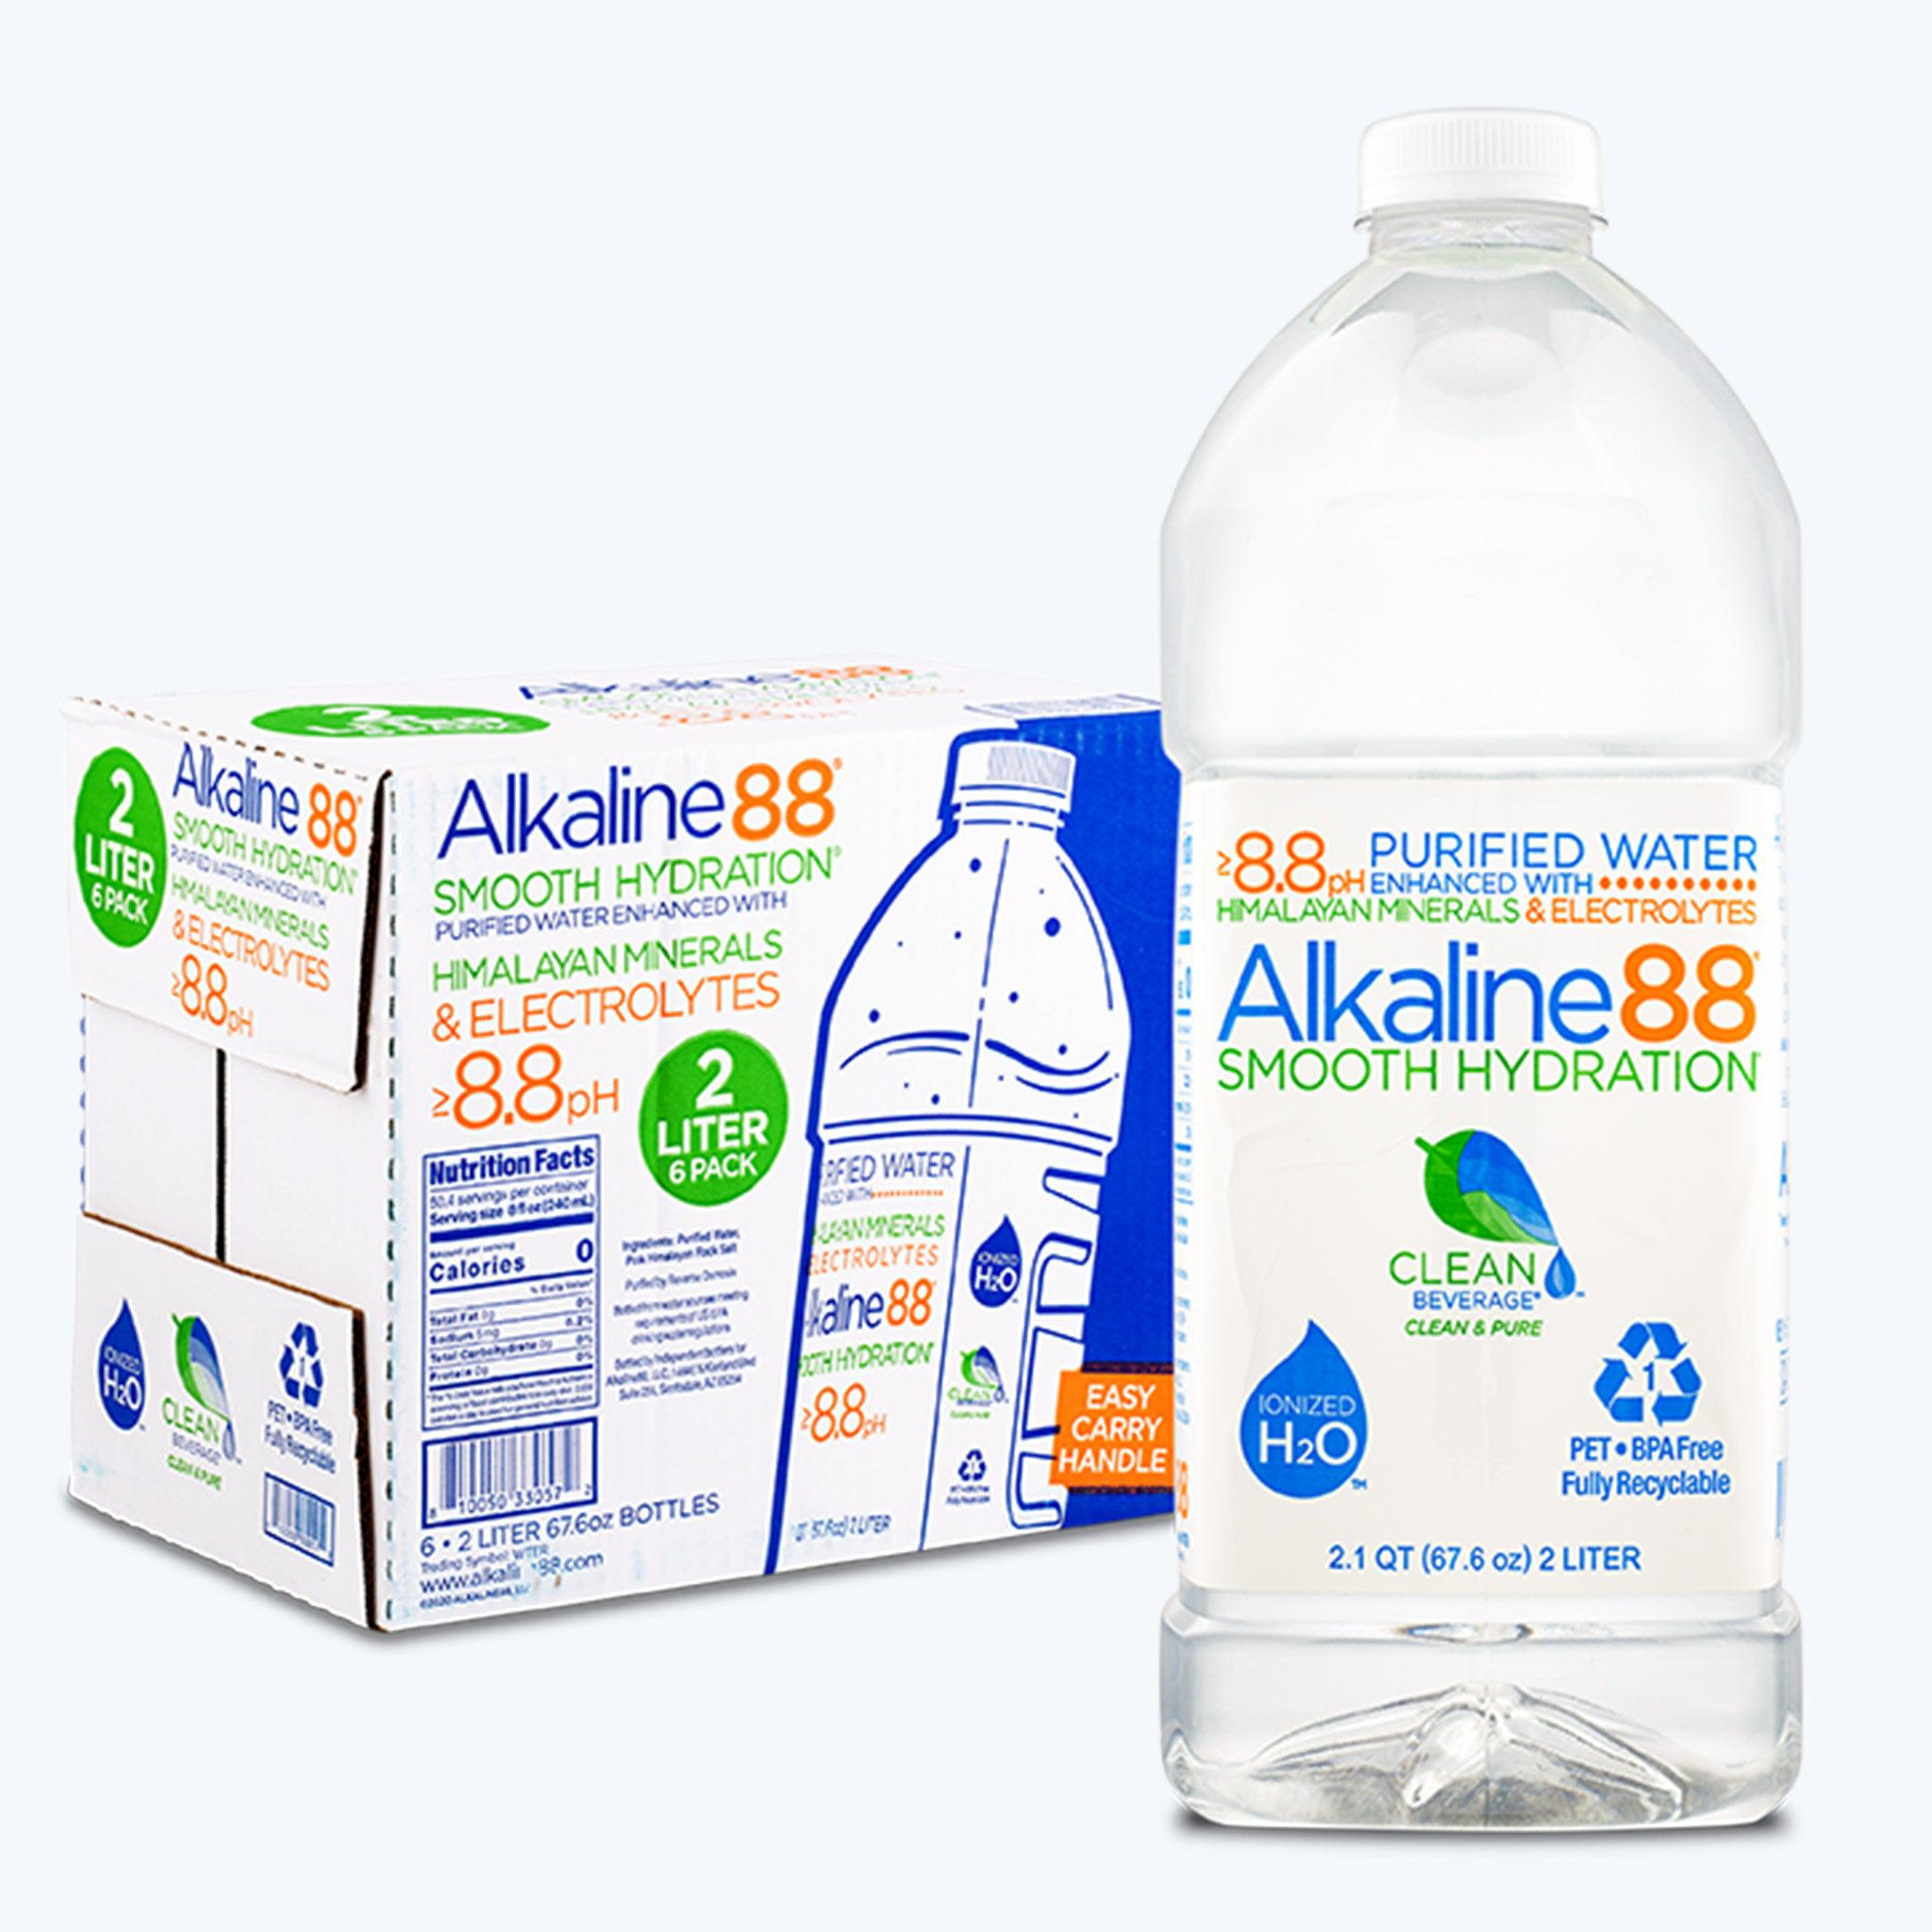 Alkaline88 Launches 2-Liter Shaq Paq Throughout Texas